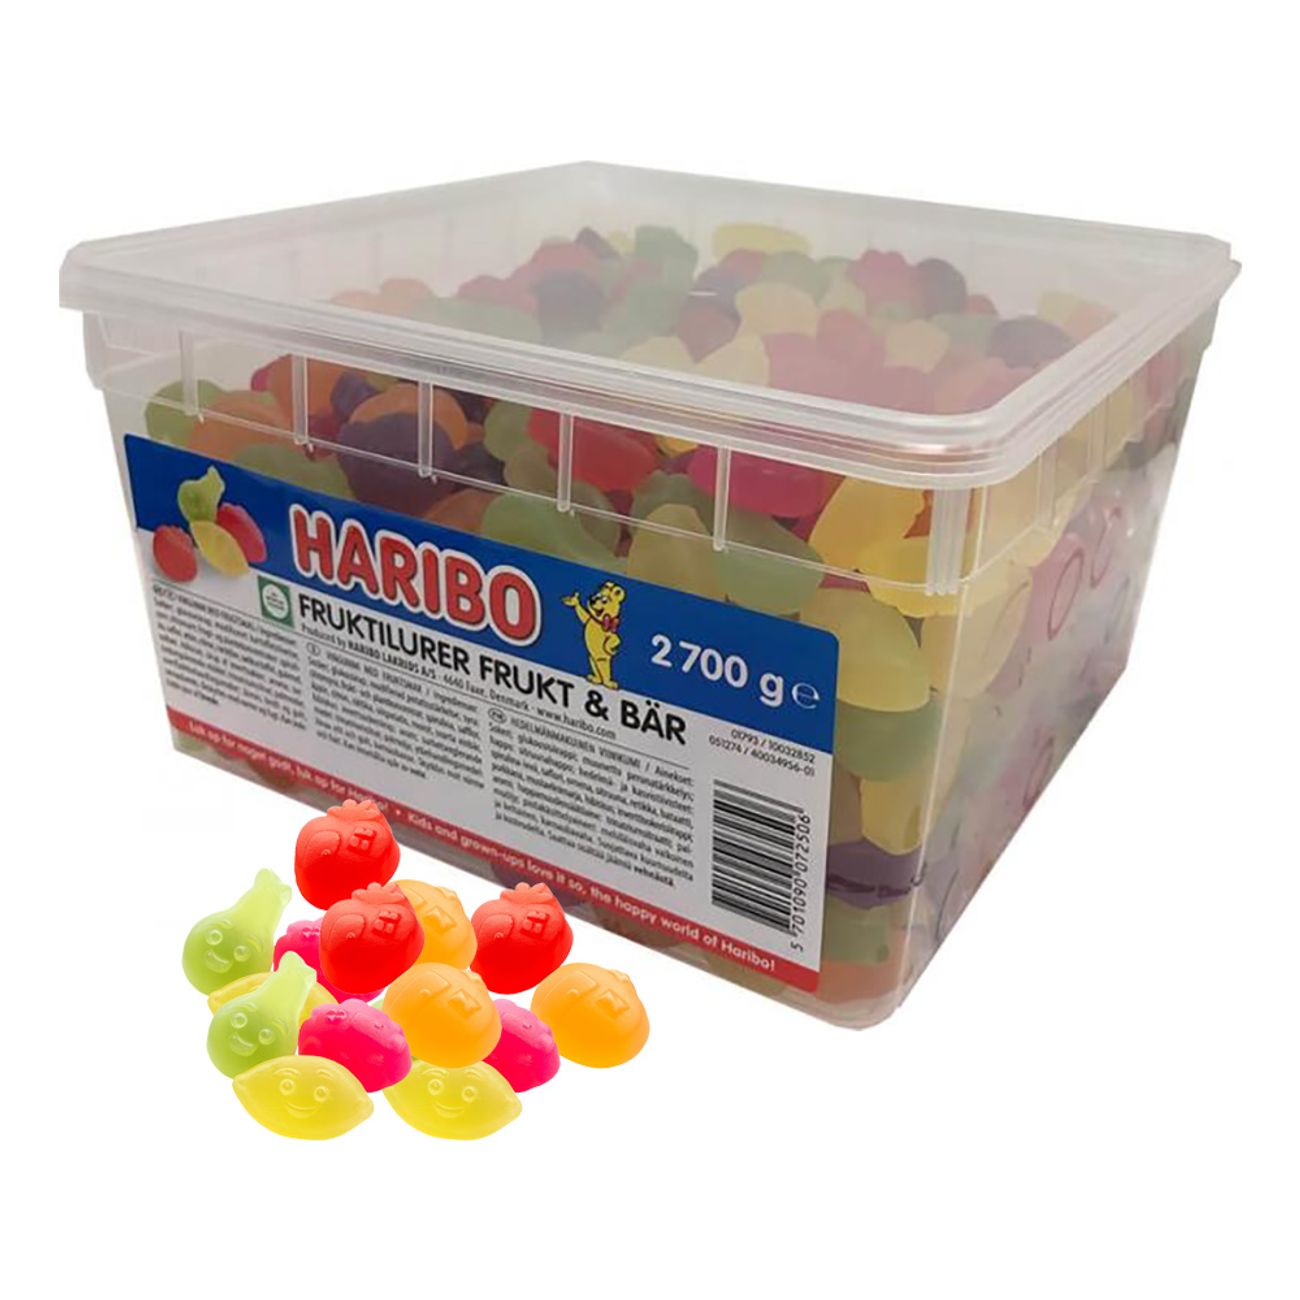 fruktilurer-frukt-bar-storpack-96404-3